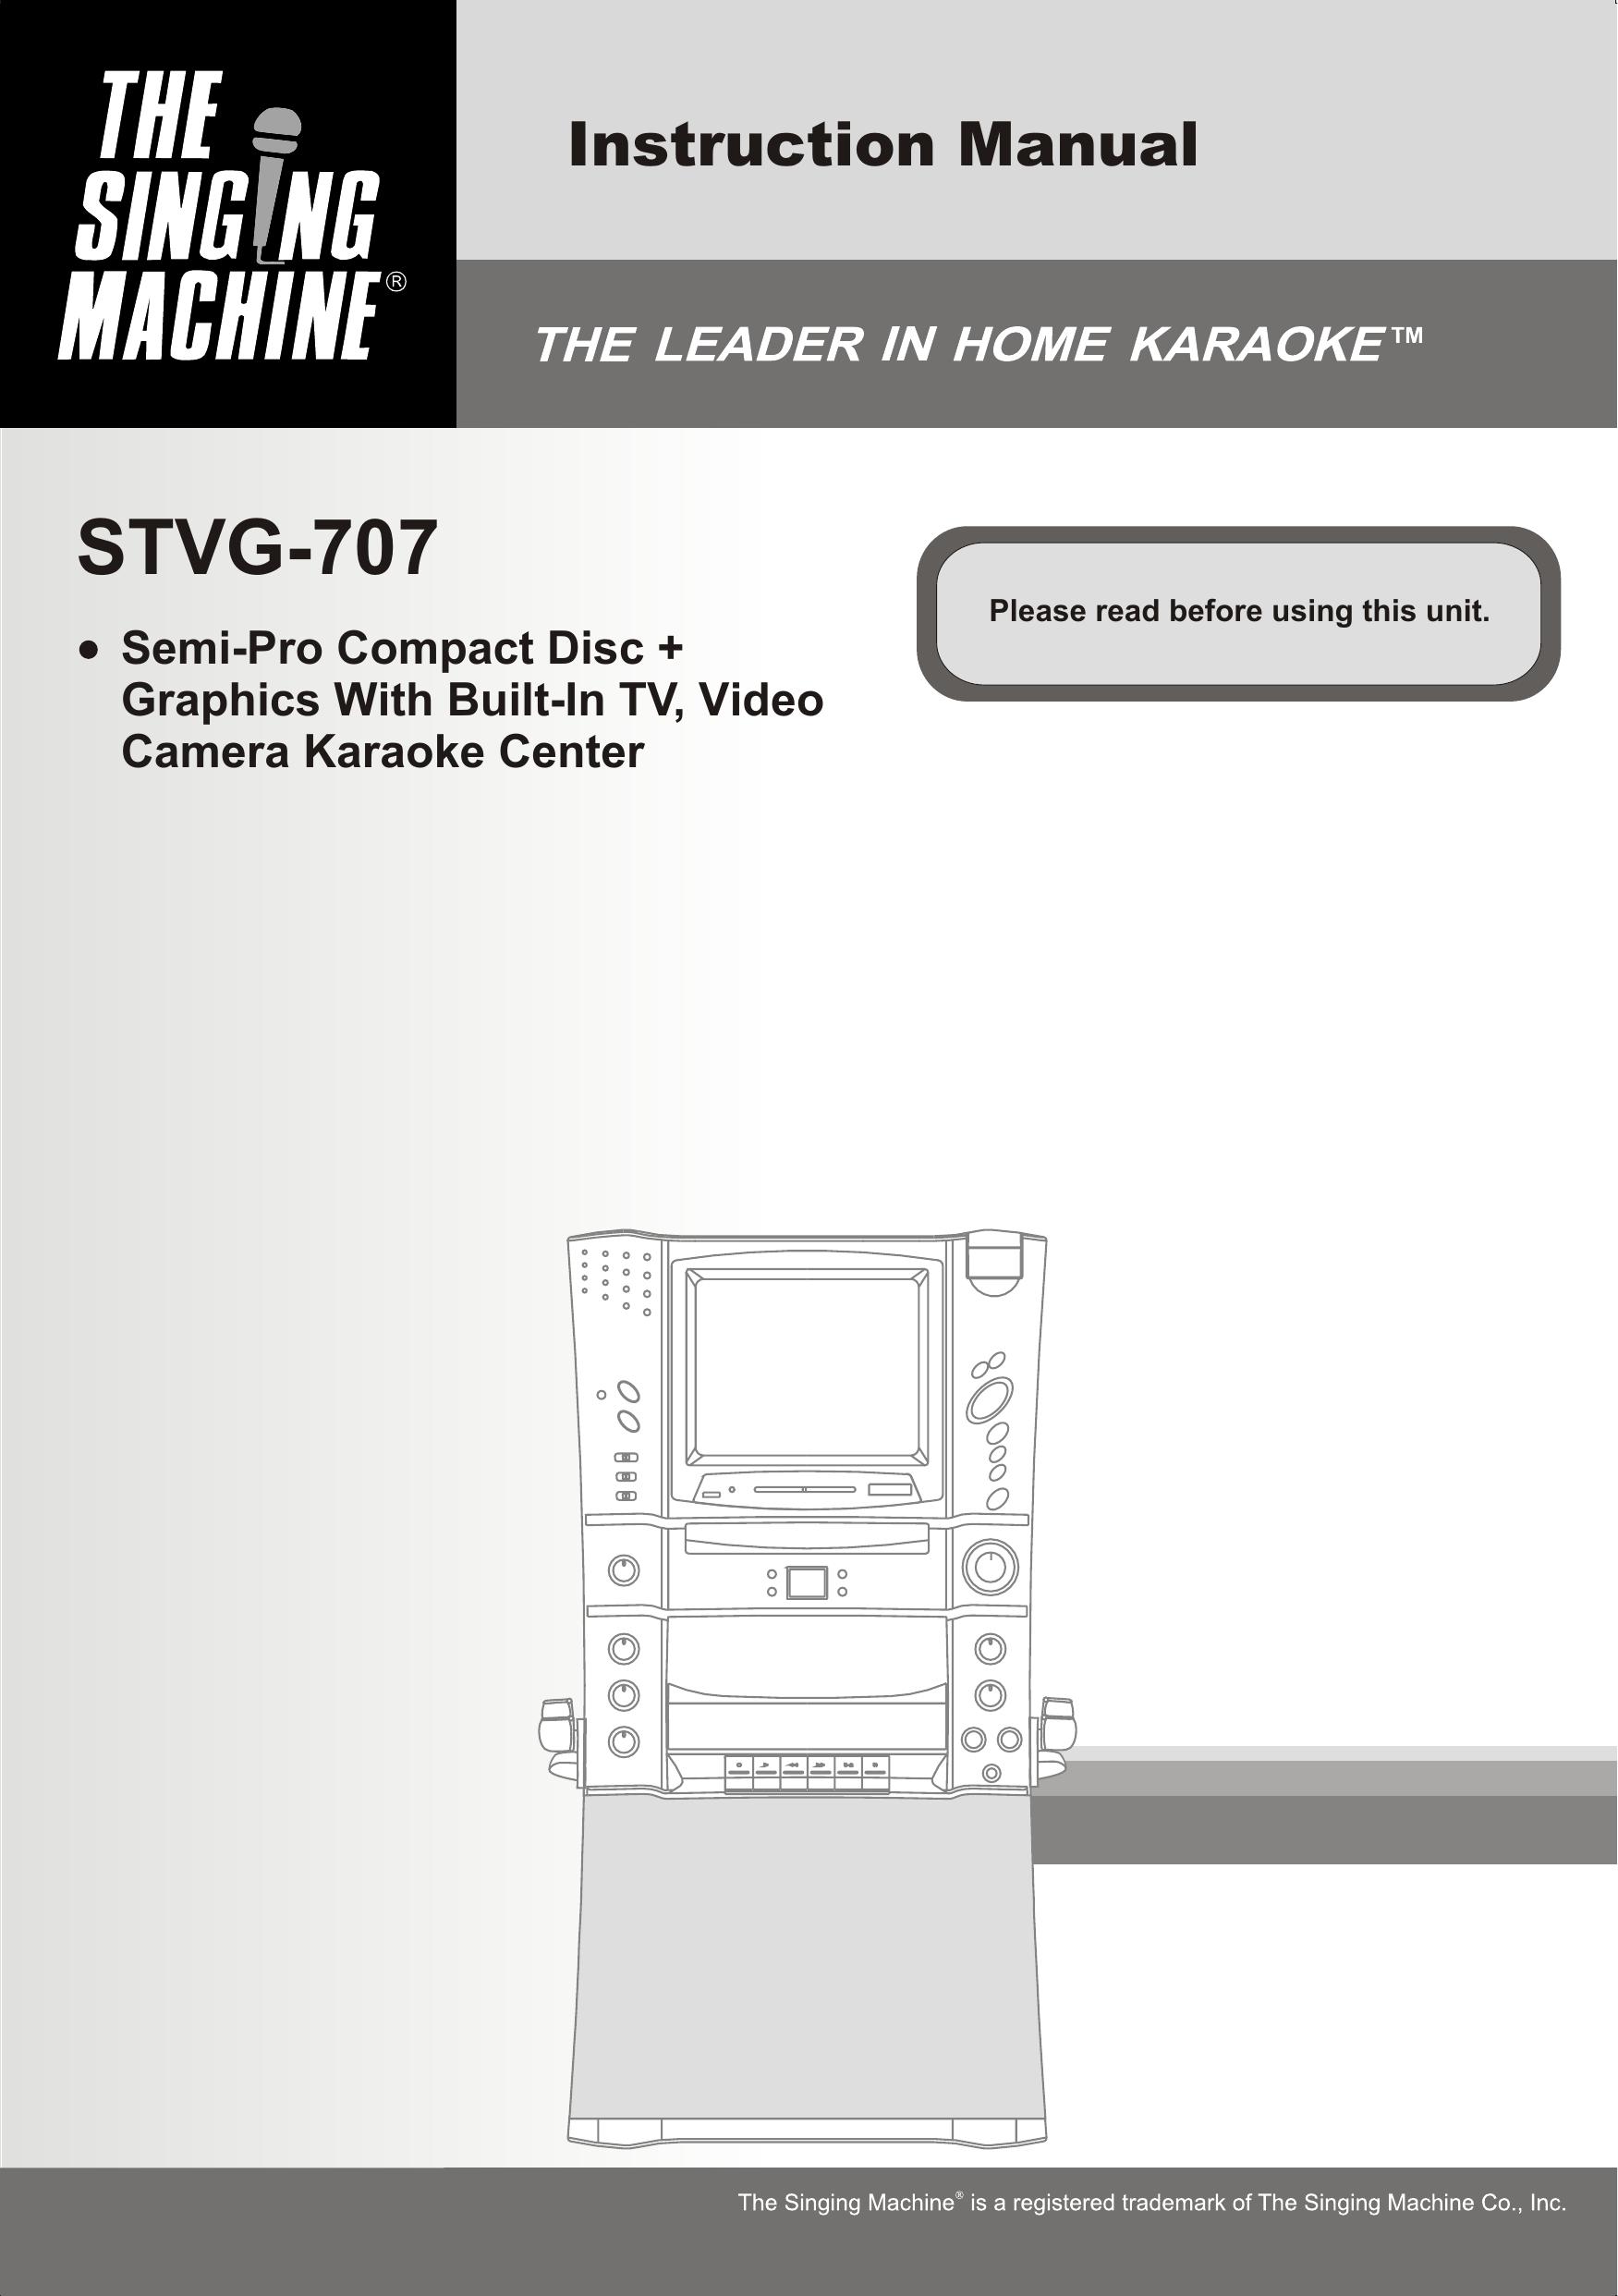 The Singing Machine STVG-707 Karaoke Machine User Manual